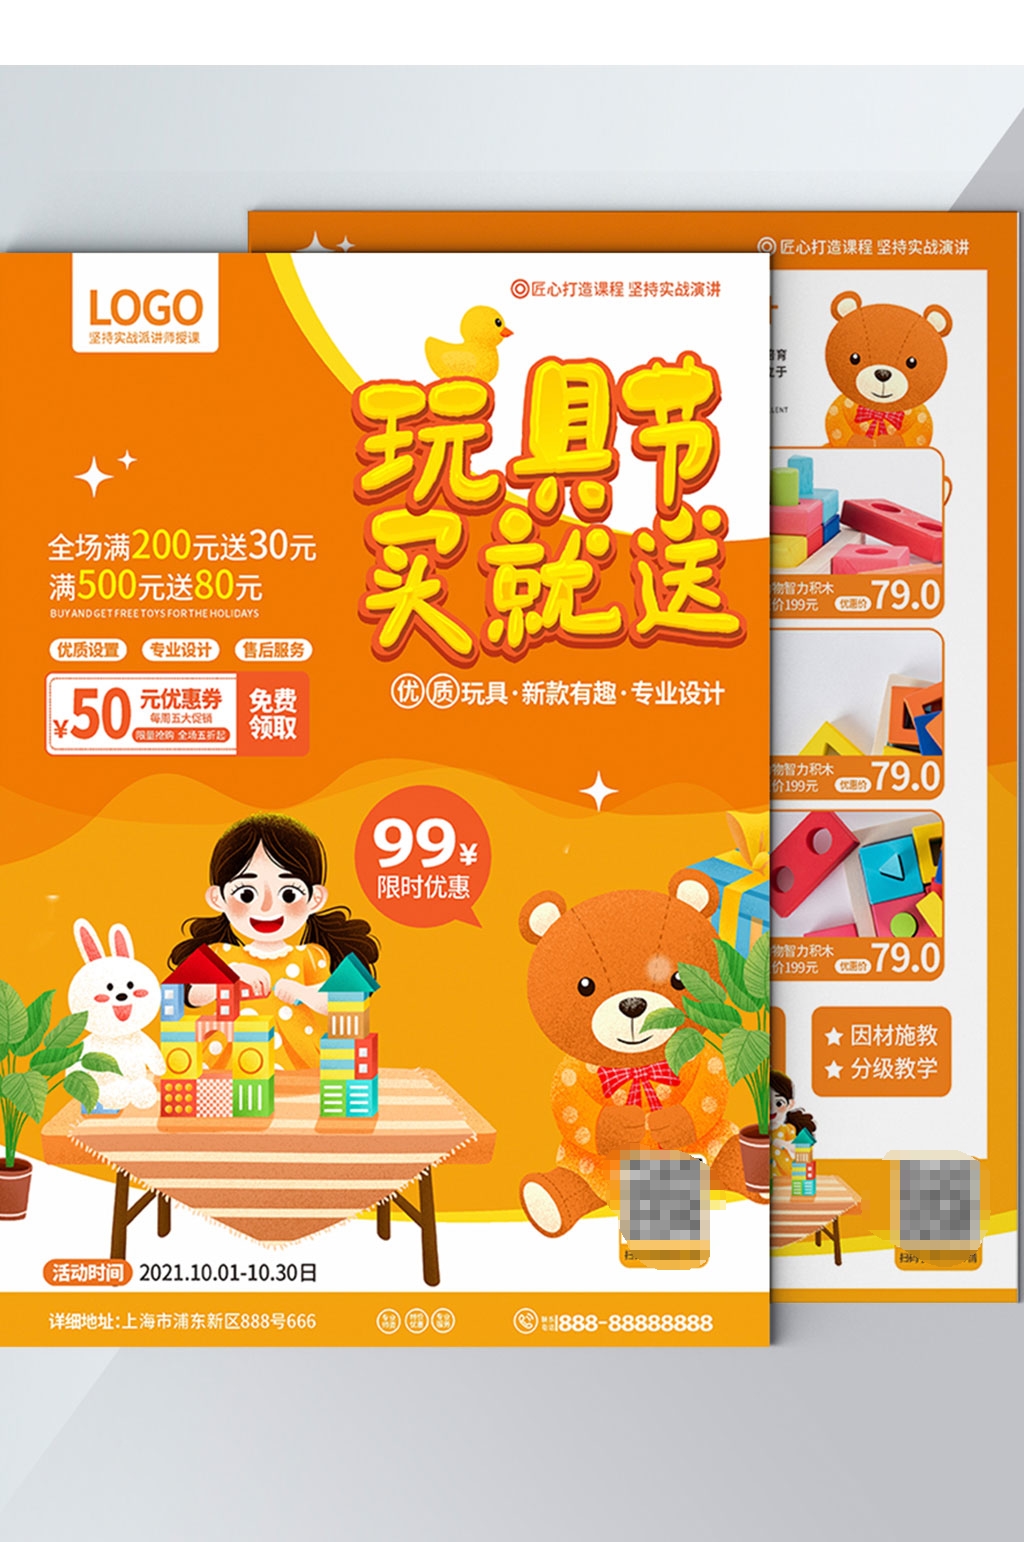 玩具促销dm宣传单素材免费下载,本作品是由阿荟荟上传的原创平面广告